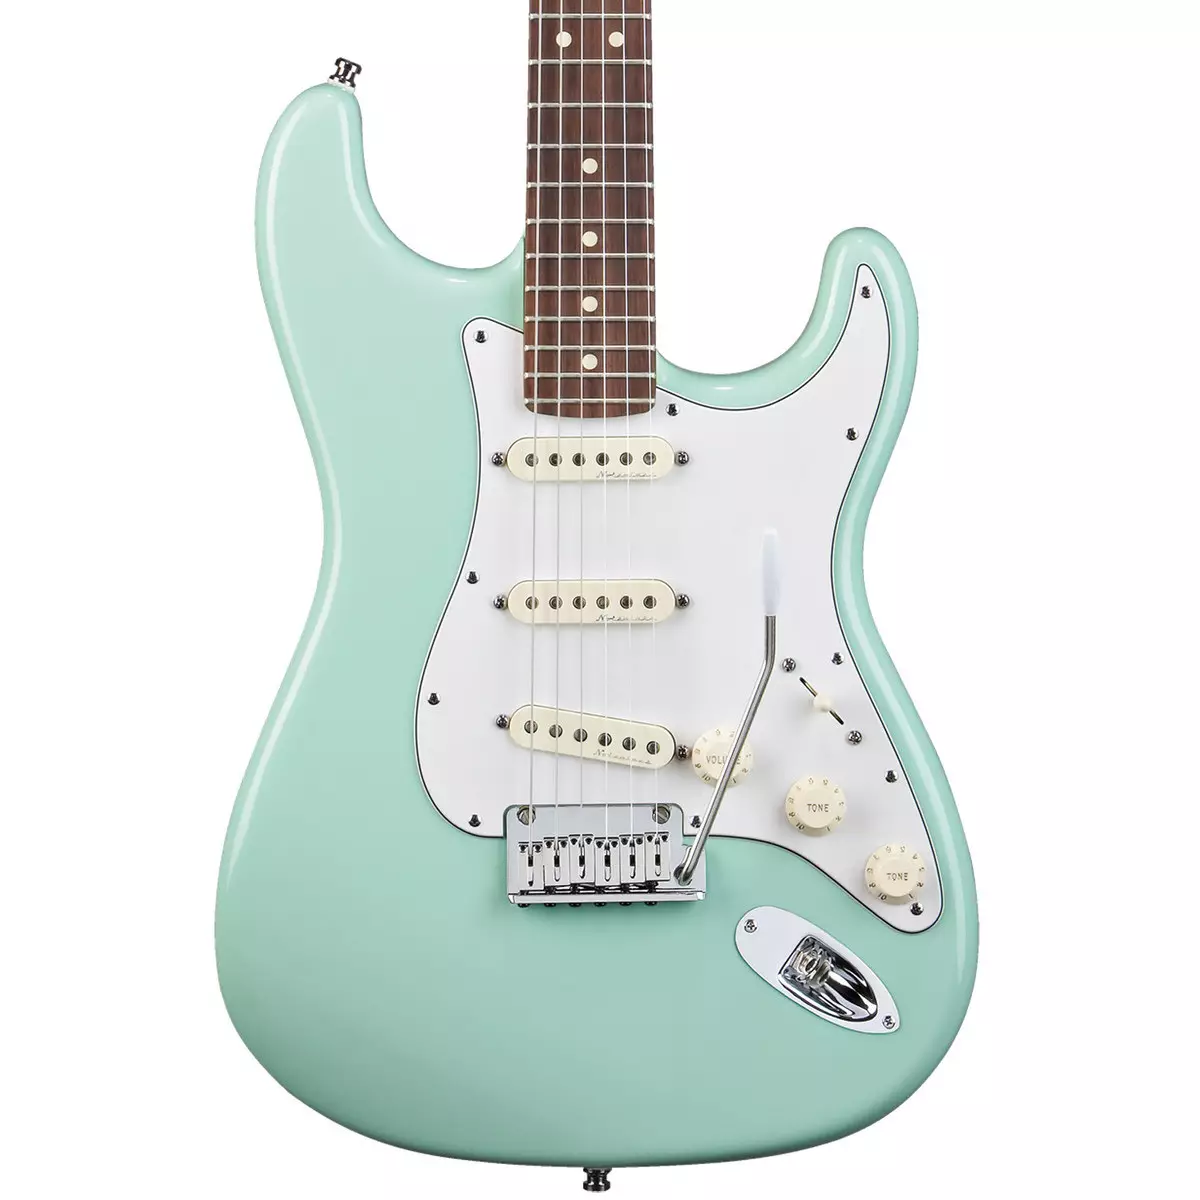 Guitars Fender: kitarat elektrike dhe elektro-akustike, kitarat bas dhe klasik, Mustang dhe CC-60SCE, modele të tjera, rast zgjedhjesh dhe komente 26262_16